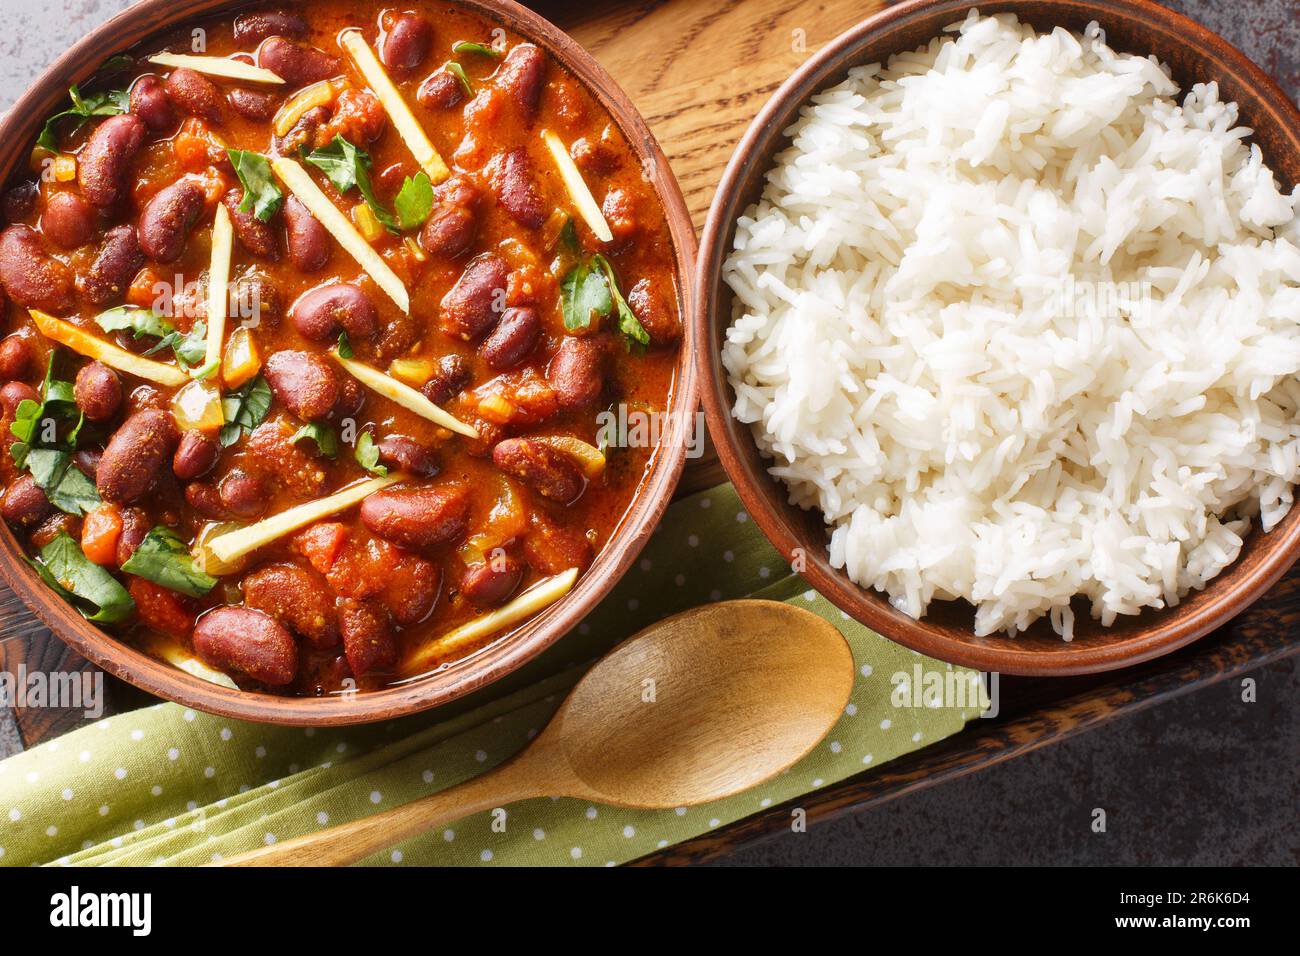 Rajma oder Razma ist ein beliebtes nordindisches Essen, bestehend aus gekochten roten Kidney Beans in einer dicken Soße mit Gewürzen, serviert mit Reis aus nächster Nähe auf einem Wald Stockfoto